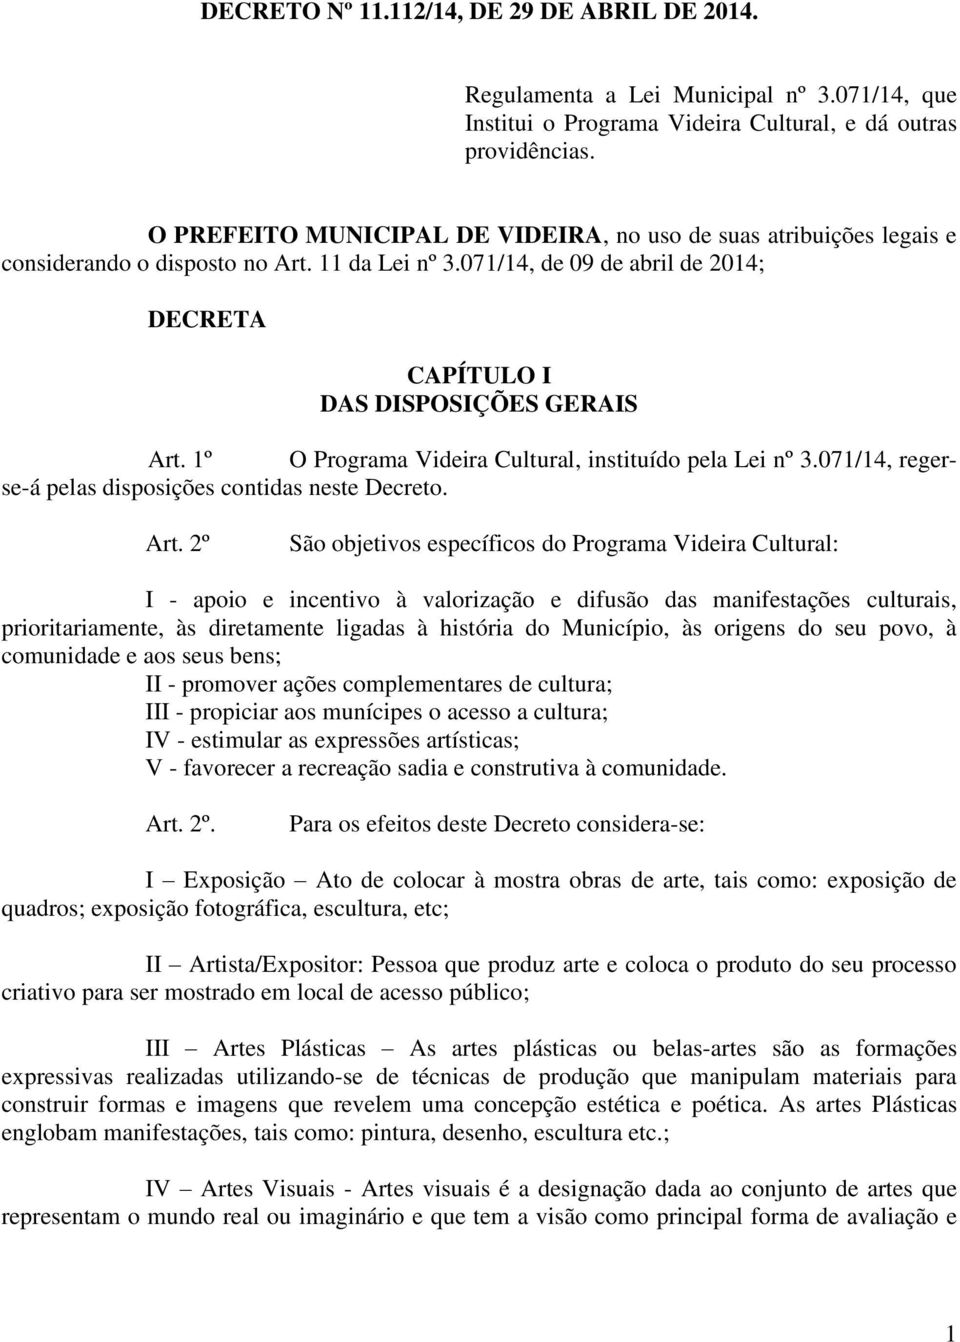 1º O Programa Videira Cultural, instituído pela Lei nº 3.071/14, regerse-á pelas disposições contidas neste Decreto. Art.